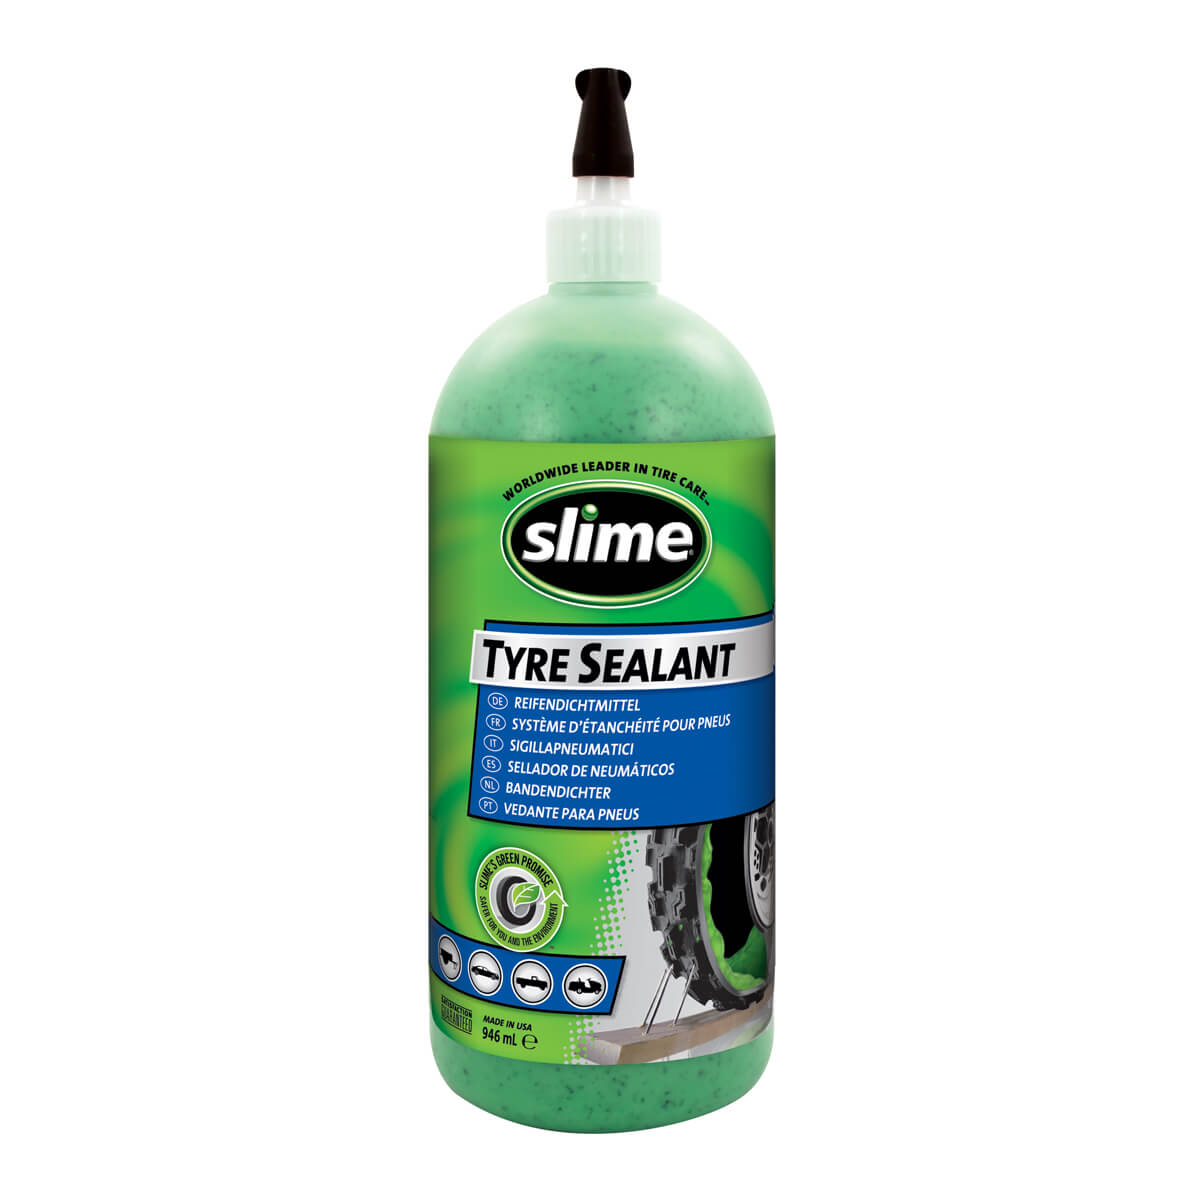 Slime tubeless leak prevention